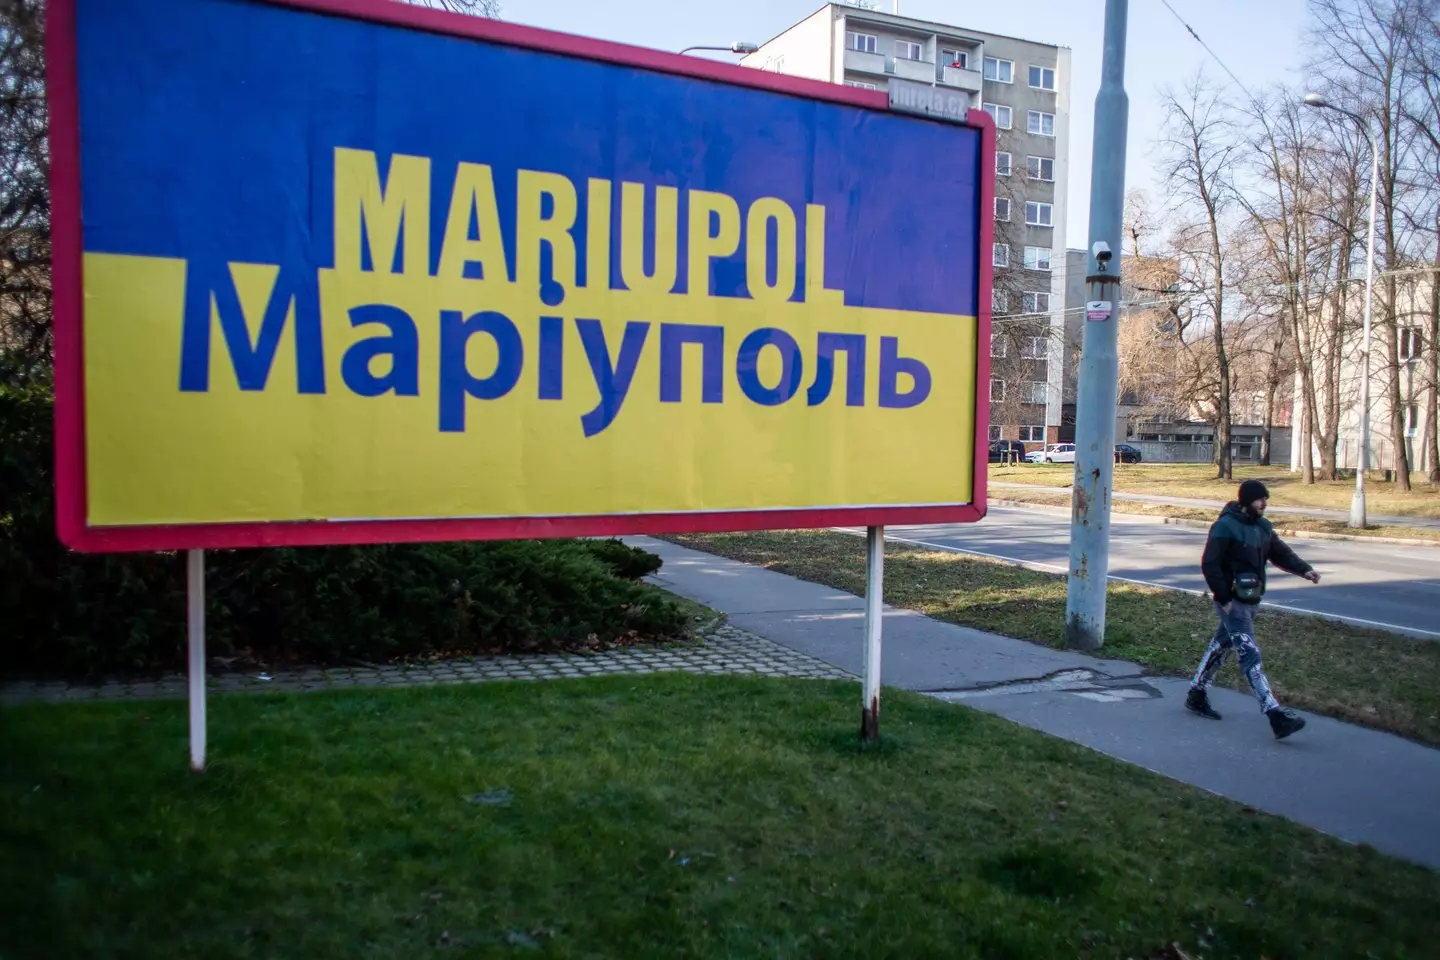 Mariupol (Alamy)